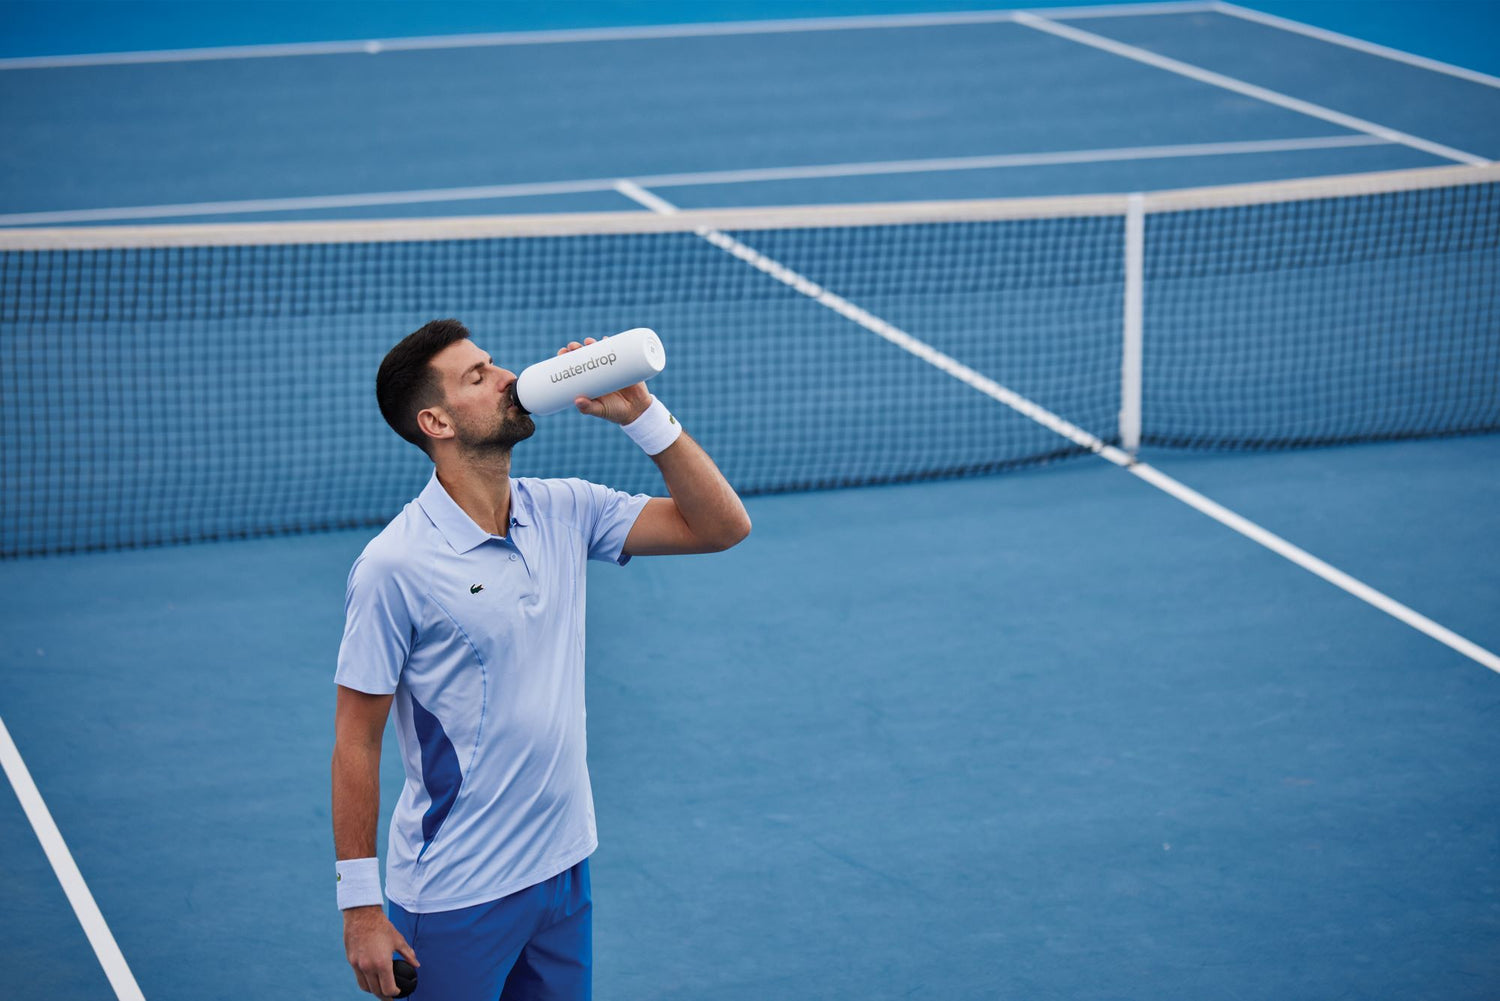 Tout ce que vous voulez savoir sur Novak Djokovic